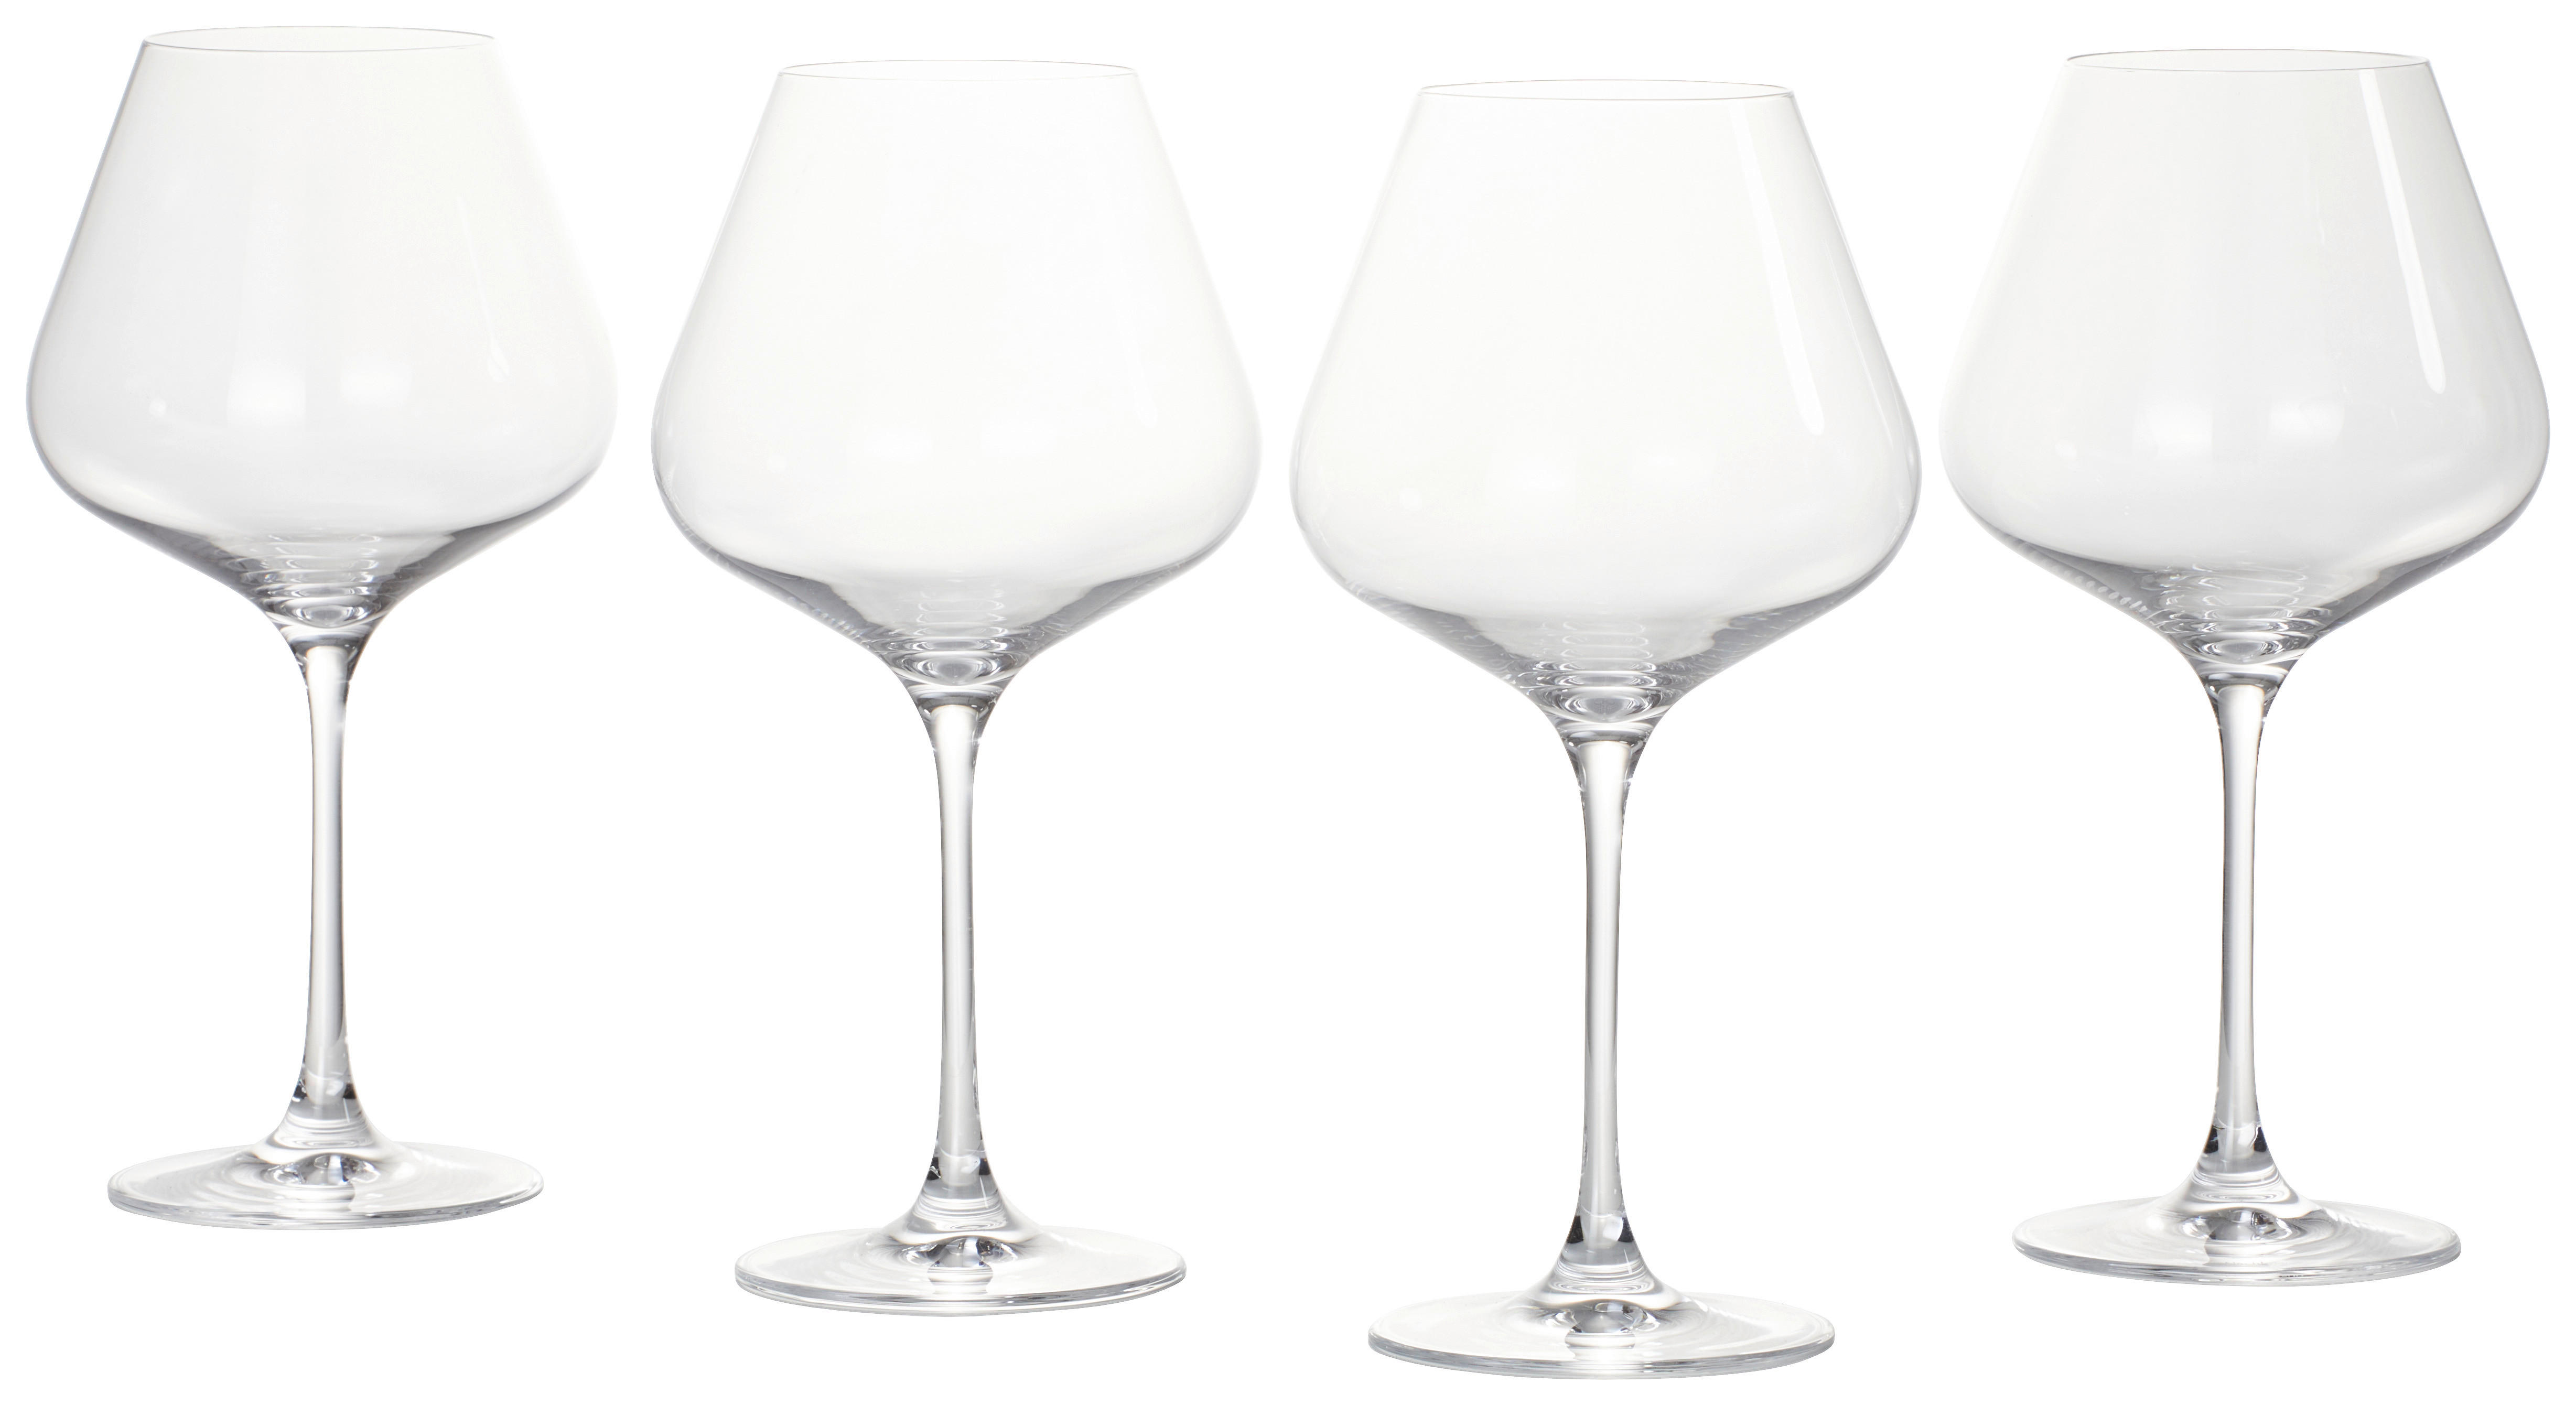 GLÄSERSET Vinova  4-teilig  - Transparent, Design, Glas (25,2/24,9/25,2cm) - Nachtmann